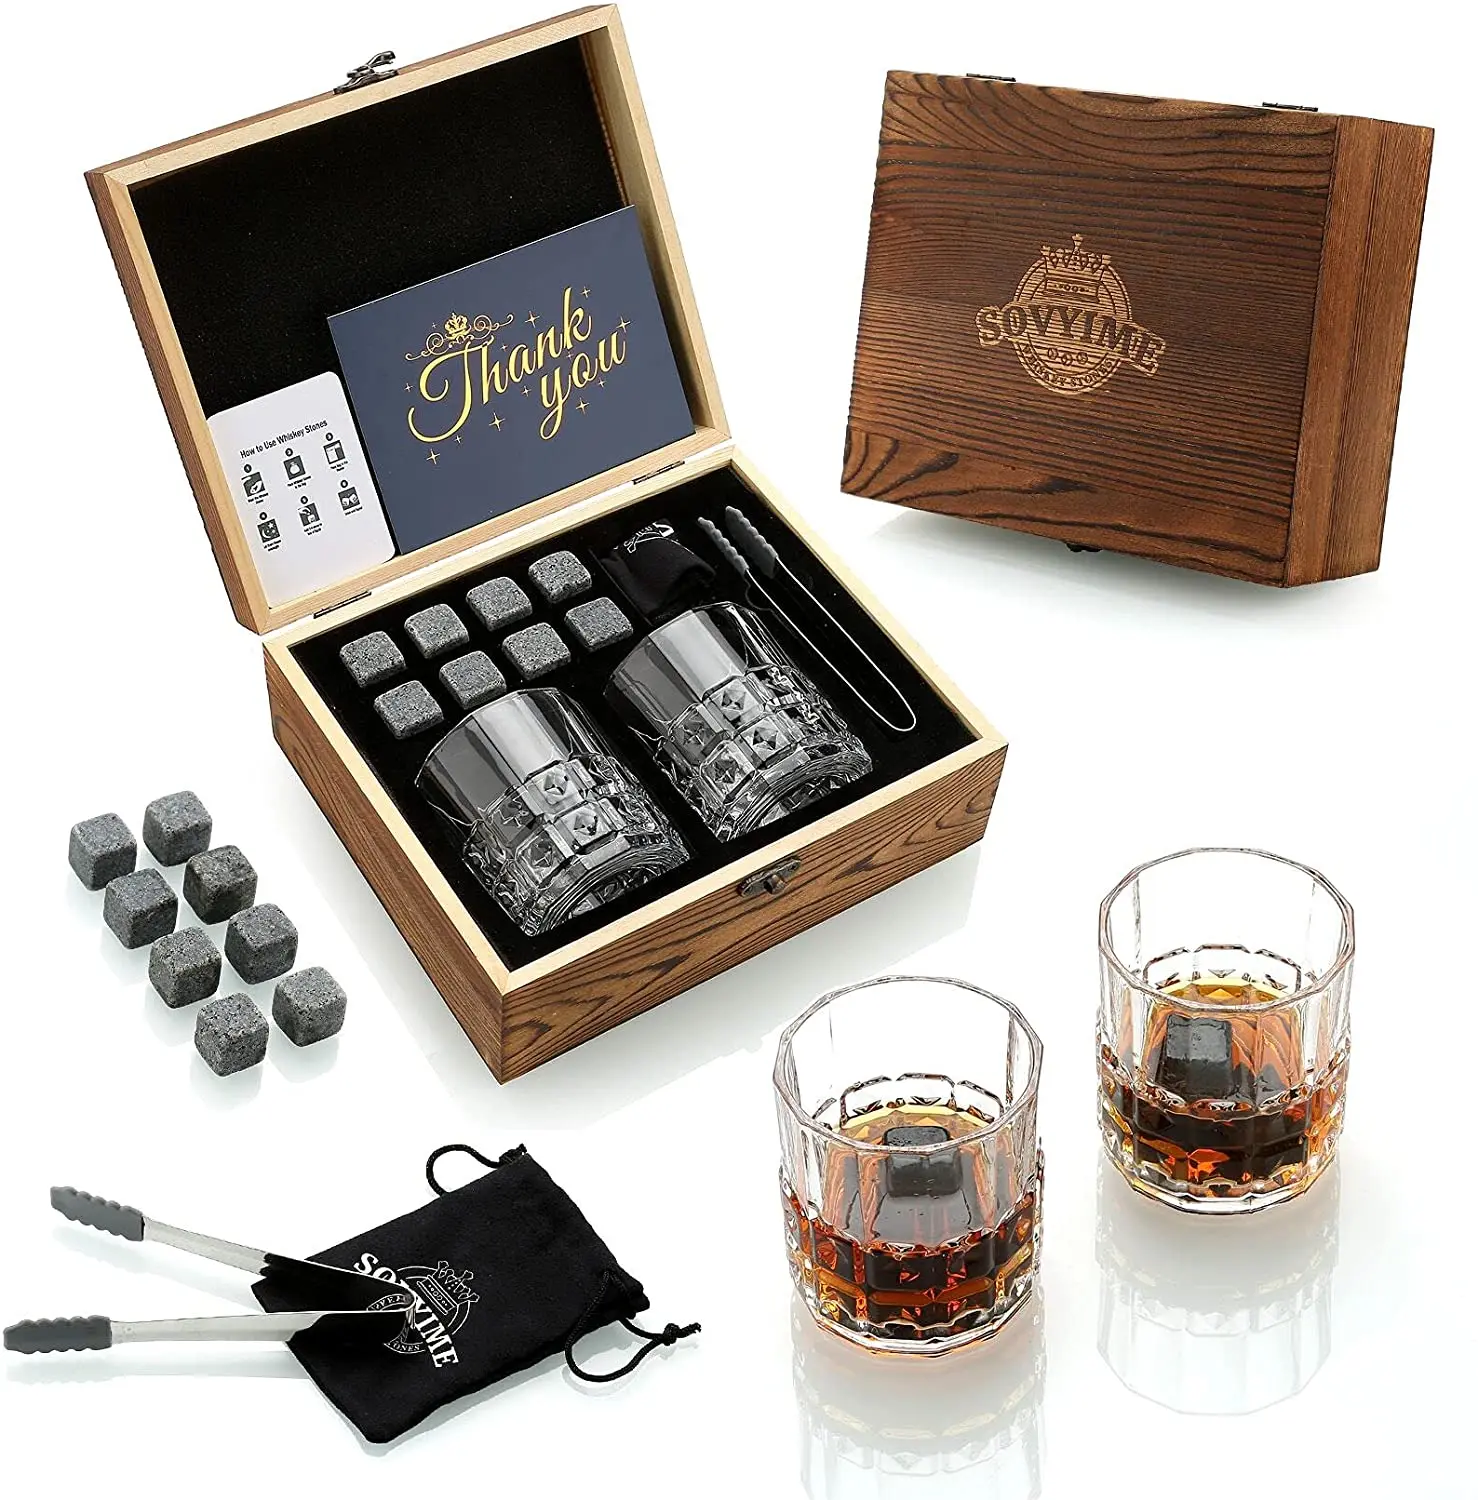 https://ae01.alicdn.com/kf/H8c5f949adcc24c2da6021a46b787f1c01/Whisky-Stones-Glasses-Gift-Set-Velvet-Bag-for-Drinking-Scottish-Whiskey-or-Gin-Wooden-Box-Present.jpg